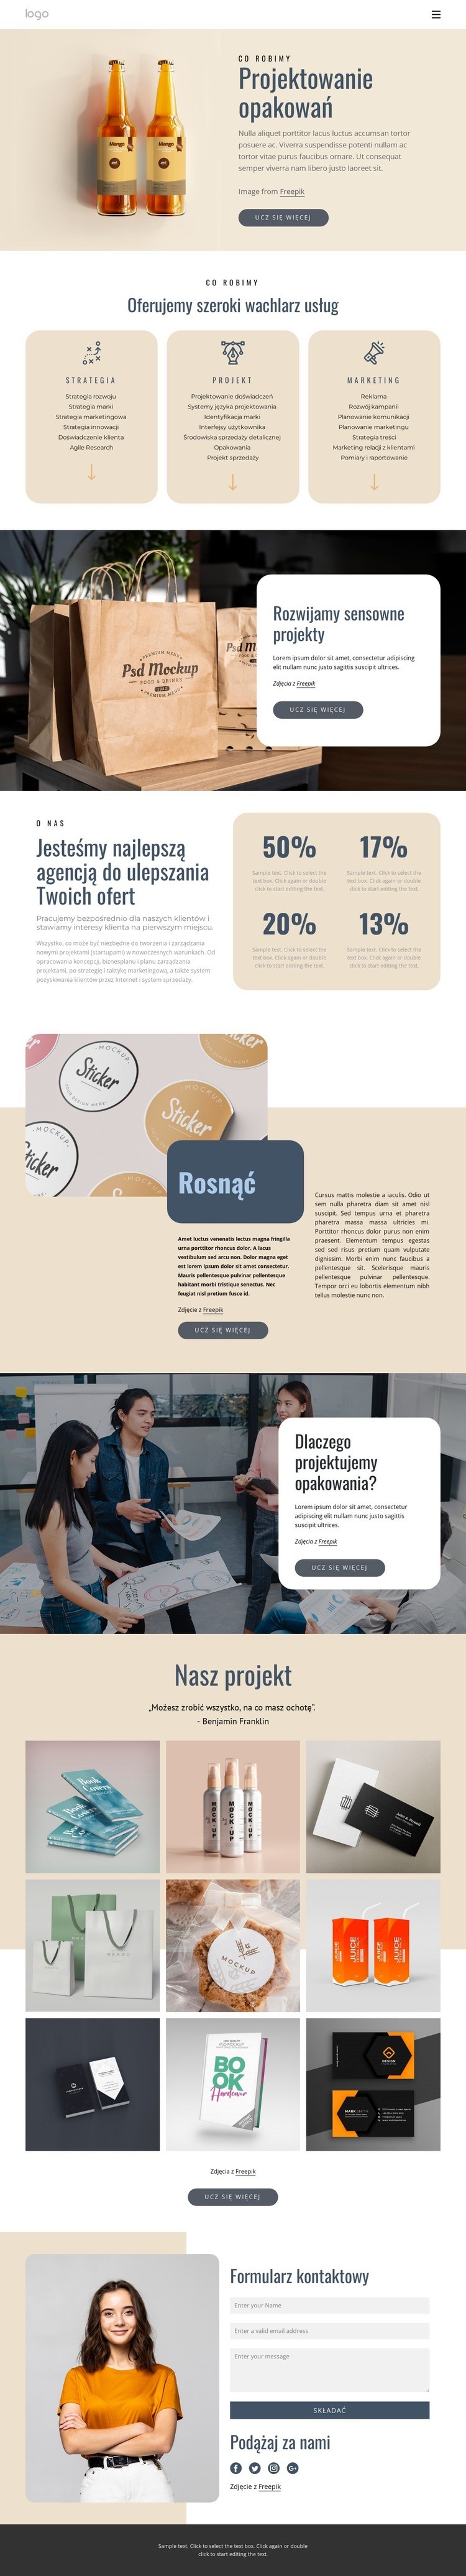 Branding i projektowanie opakowań Makieta strony internetowej